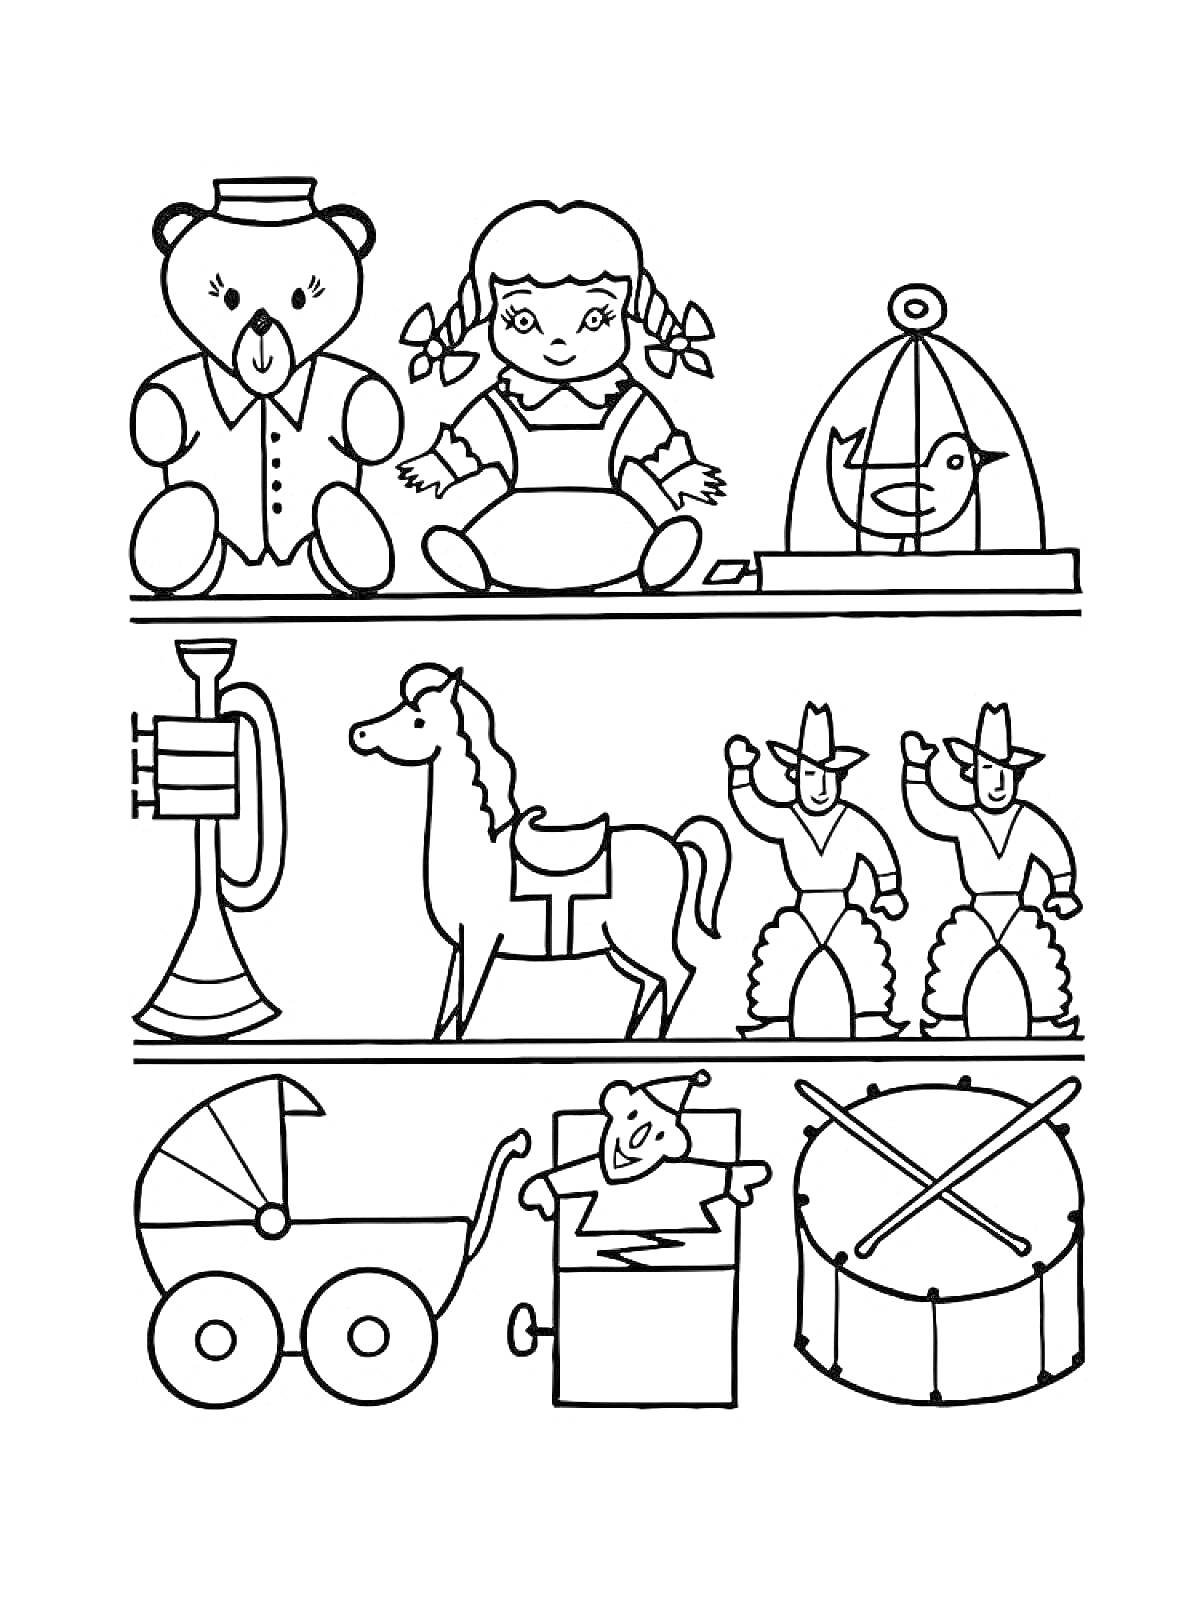 Раскраска Магазин игрушек с медведем, куклой, клеткой с птицей, трубой, лошадкой, ковбоями, коляской, коробкой с куклой и барабаном